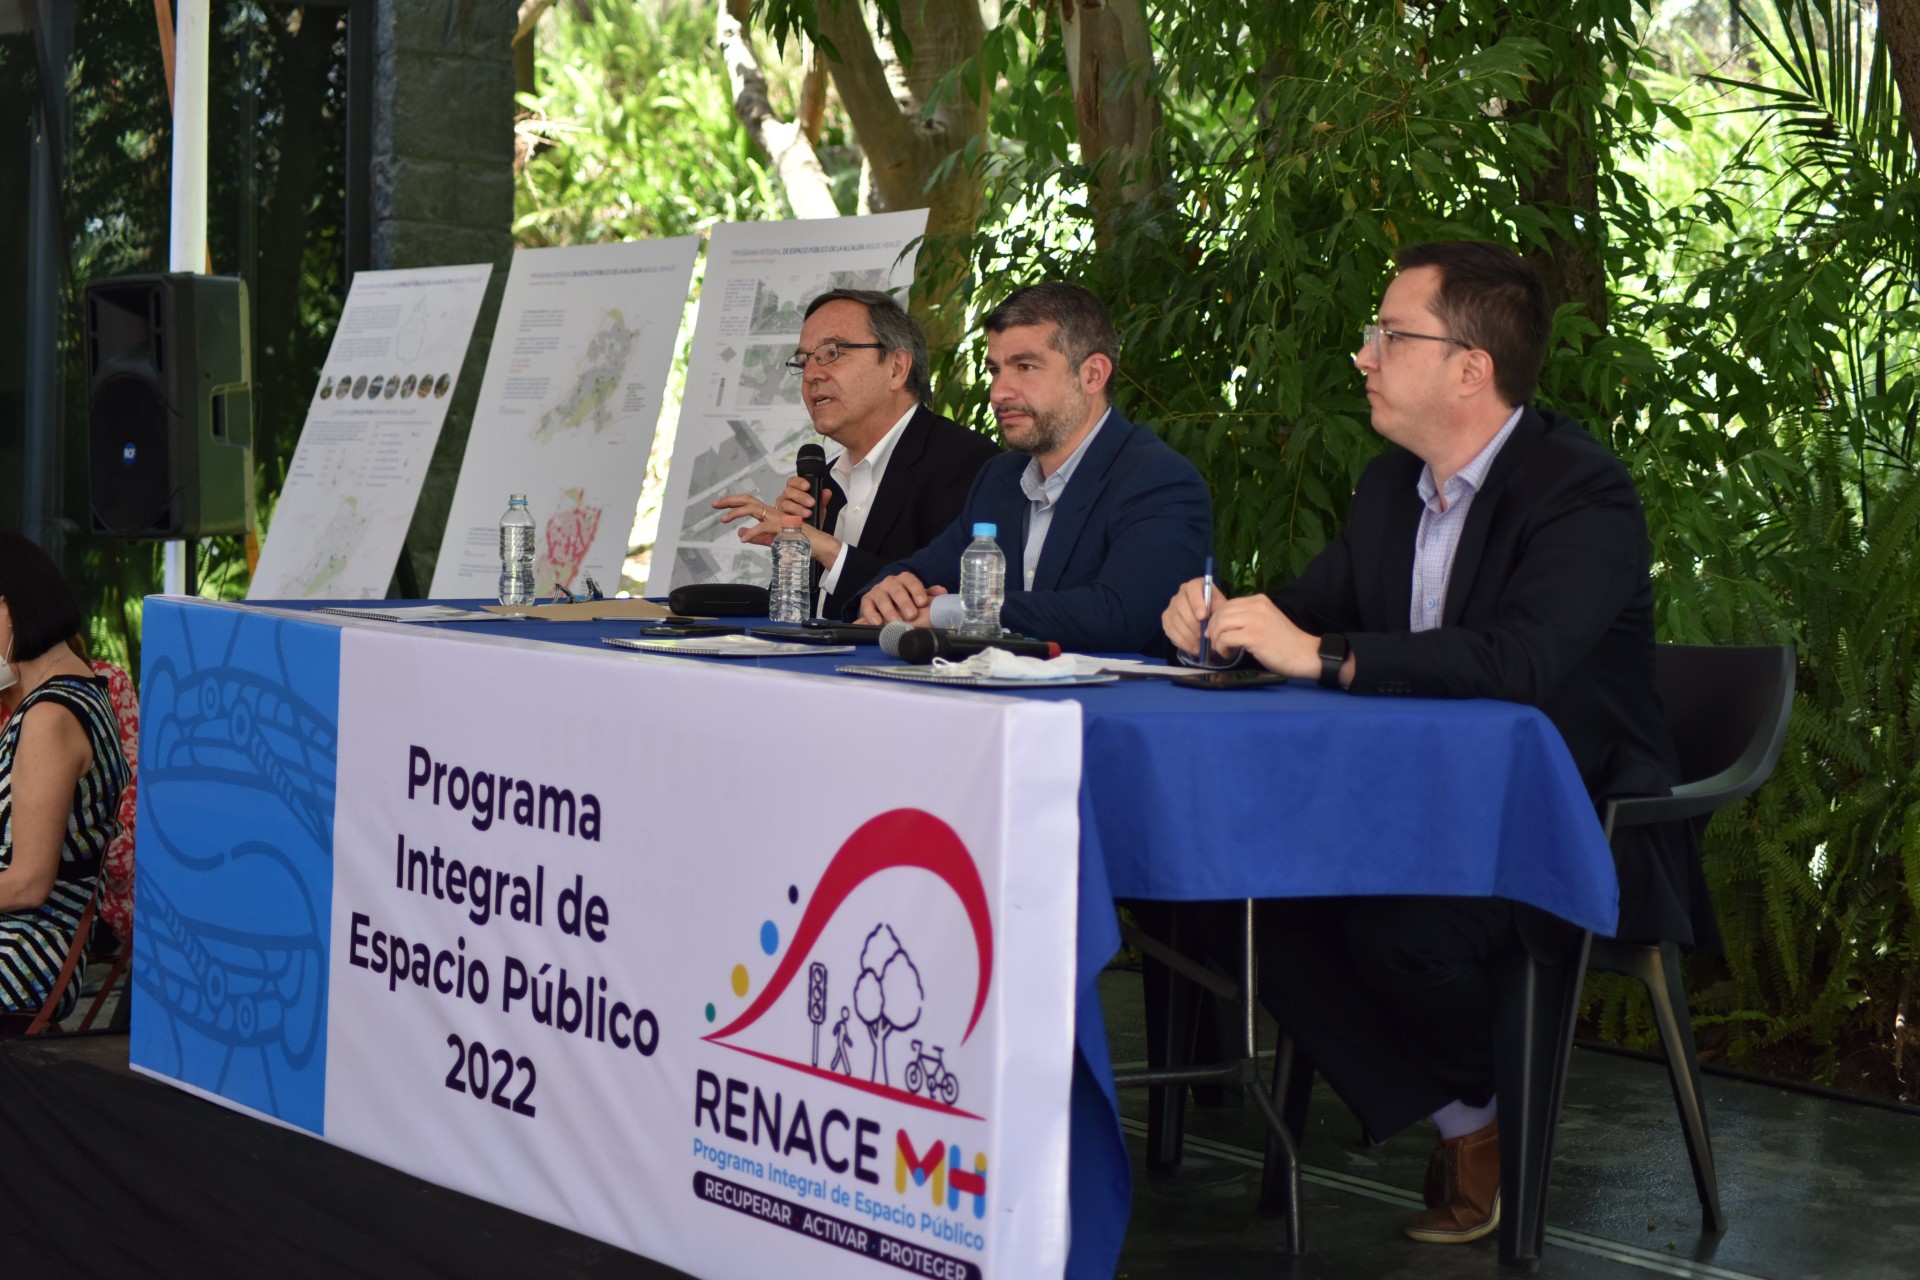 Presentan Programa Integral de Espacio Público para la Miguel Hidalgo - miguel hidalgo